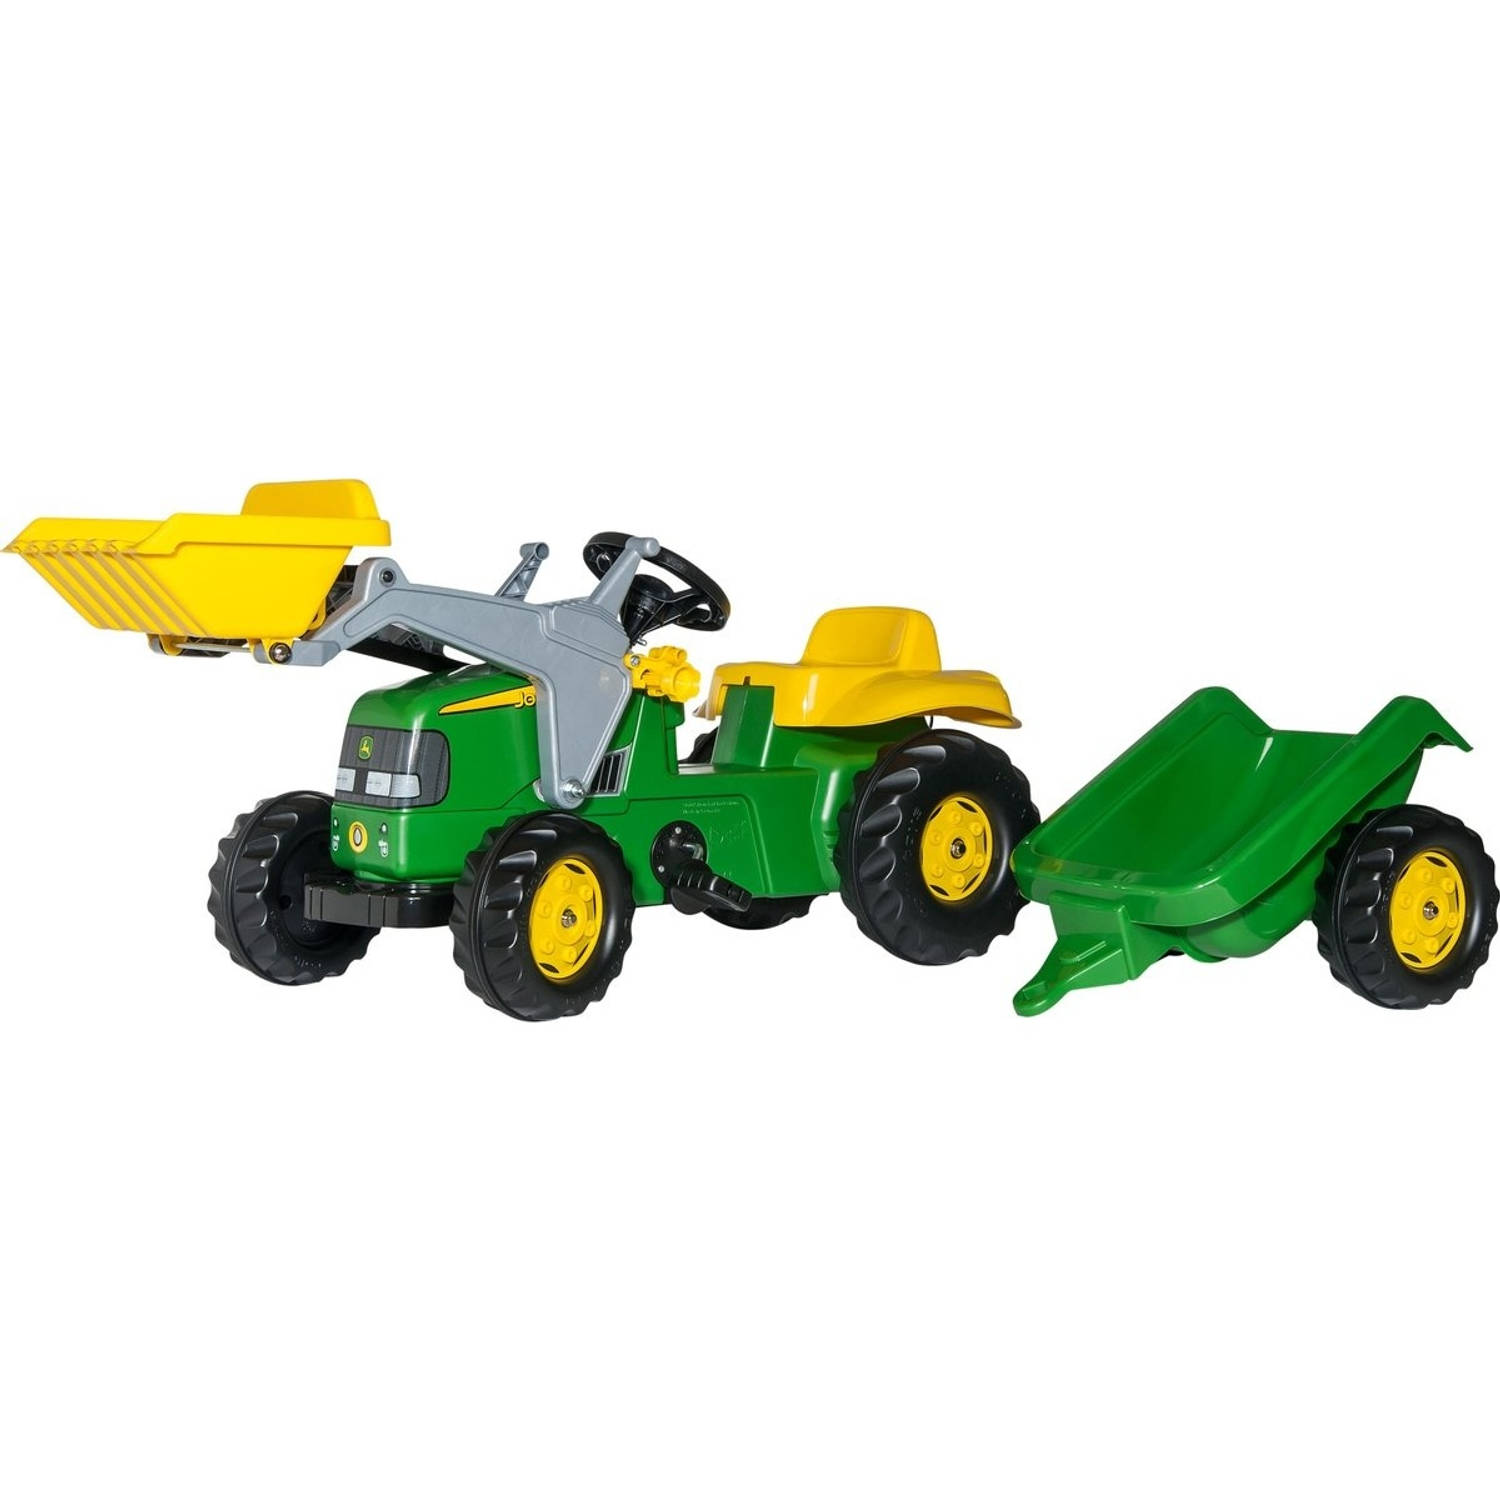 Rolly Toys 023110 RollyKid John Deere Tractor met Lader en Aanhanger